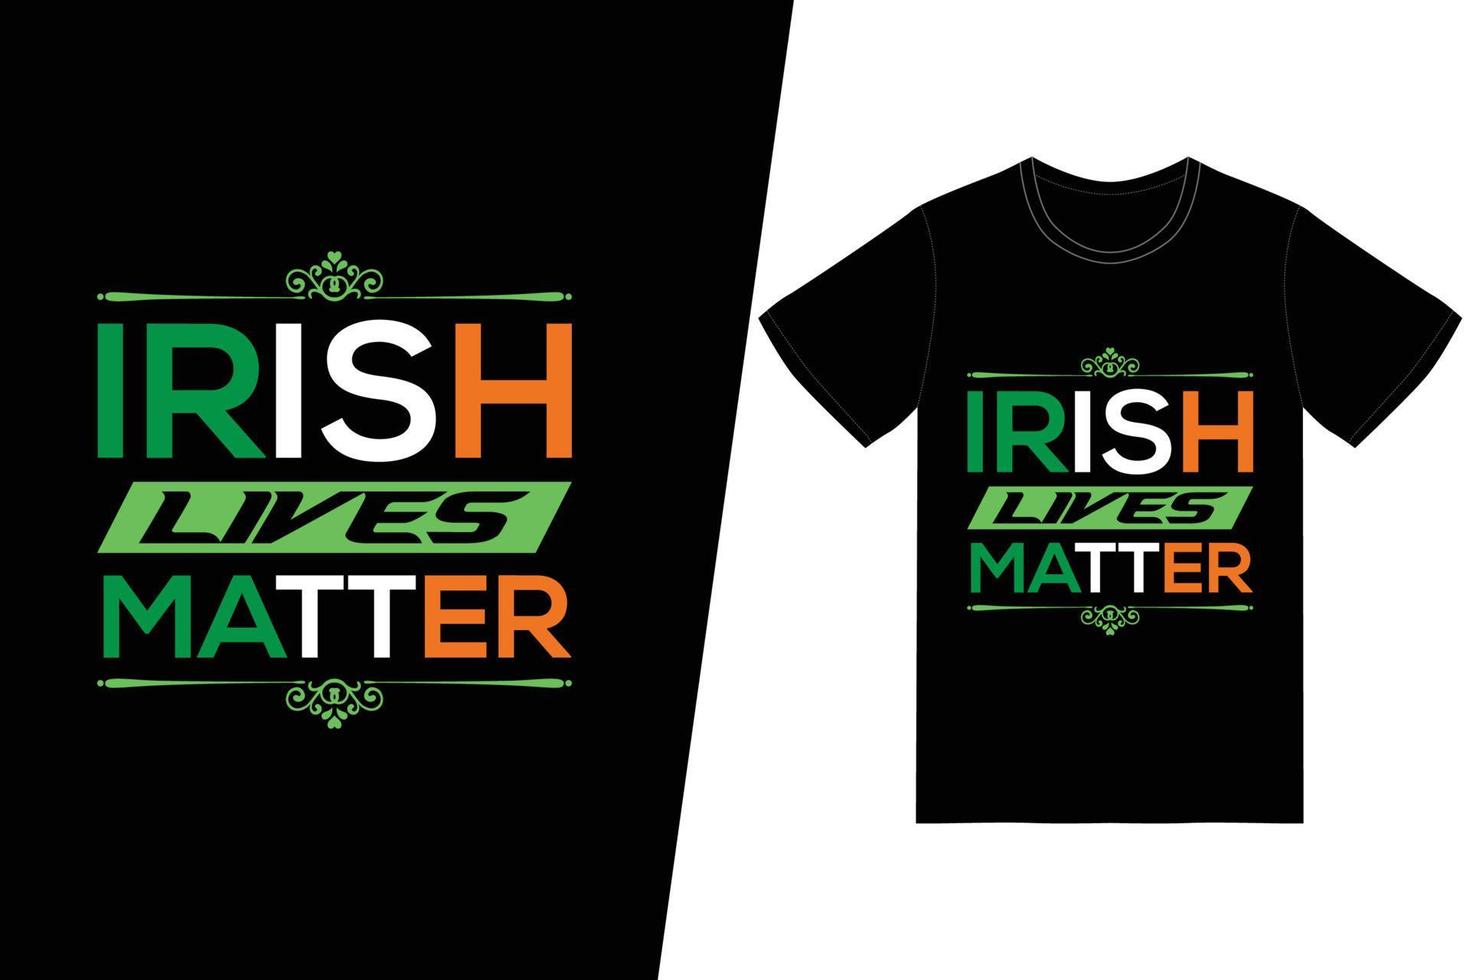 Ierse levens zijn belangrijk t-shirt vector